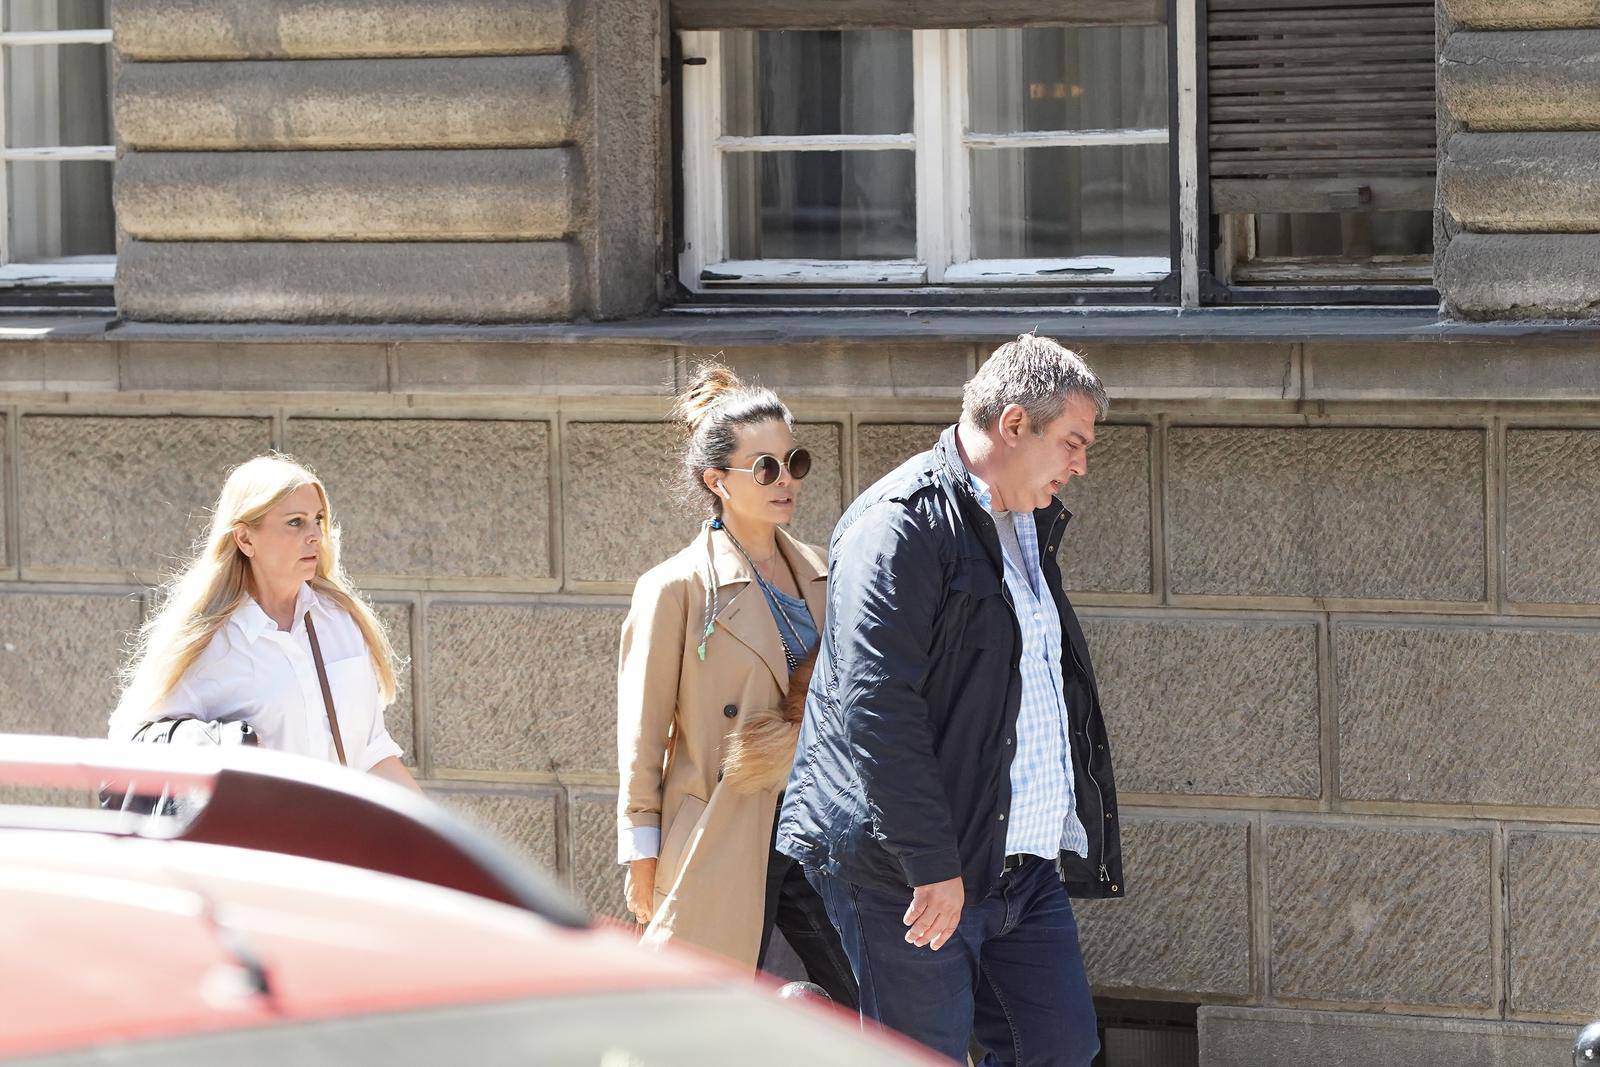 Pišek snimljena ispred zgrade u Beogradu u kojoj je živjela sa pokojnim suprugom Vidojem